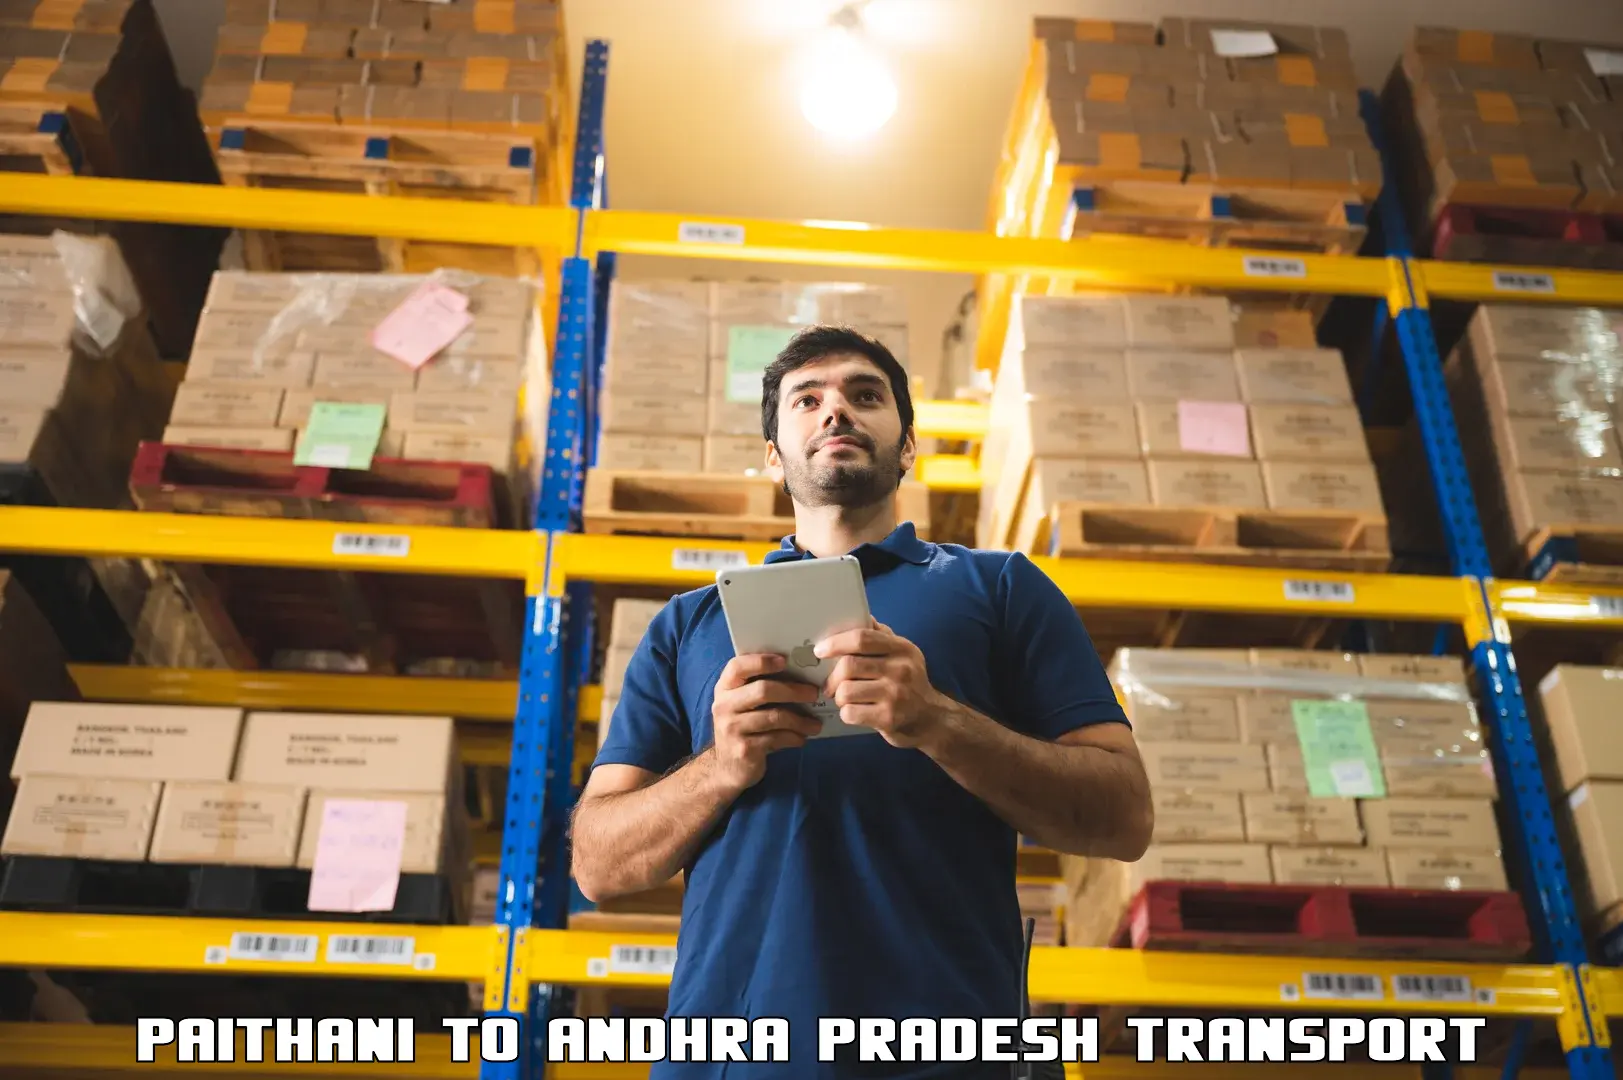 Furniture transport service Paithani to Andhra Pradesh